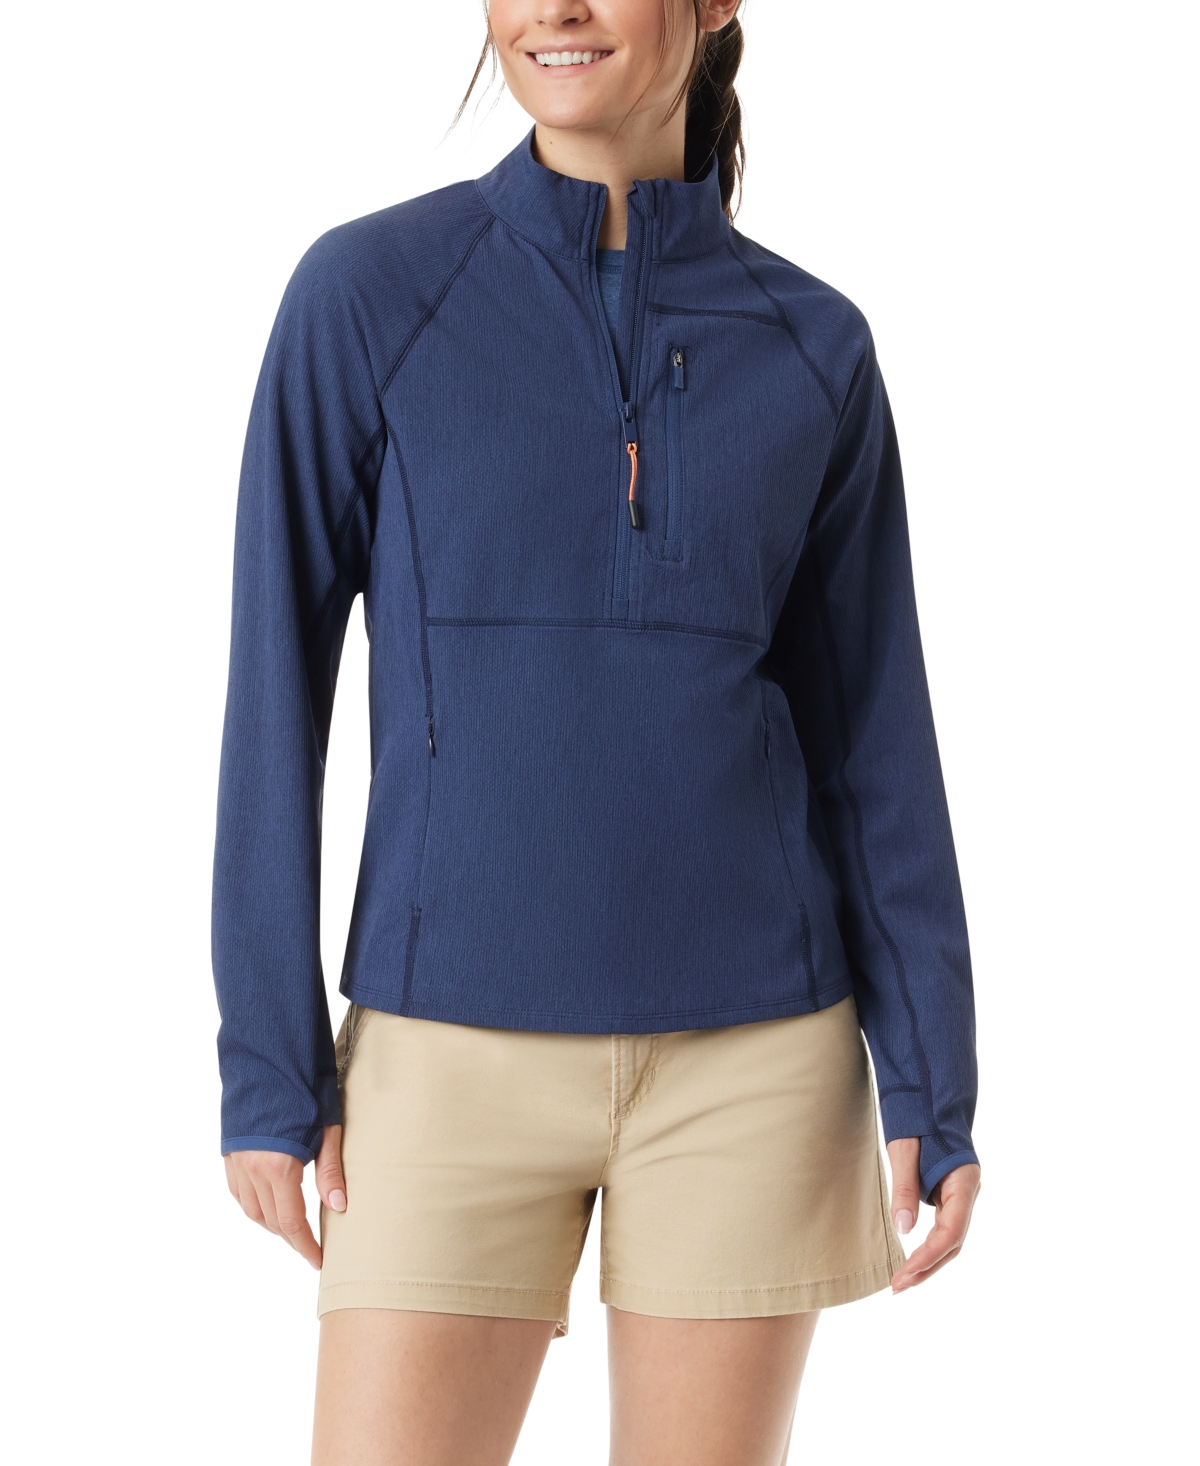 Bass Outdoor Women's Jacquard Half-zipper Mock-neck Top In Navy Blazer